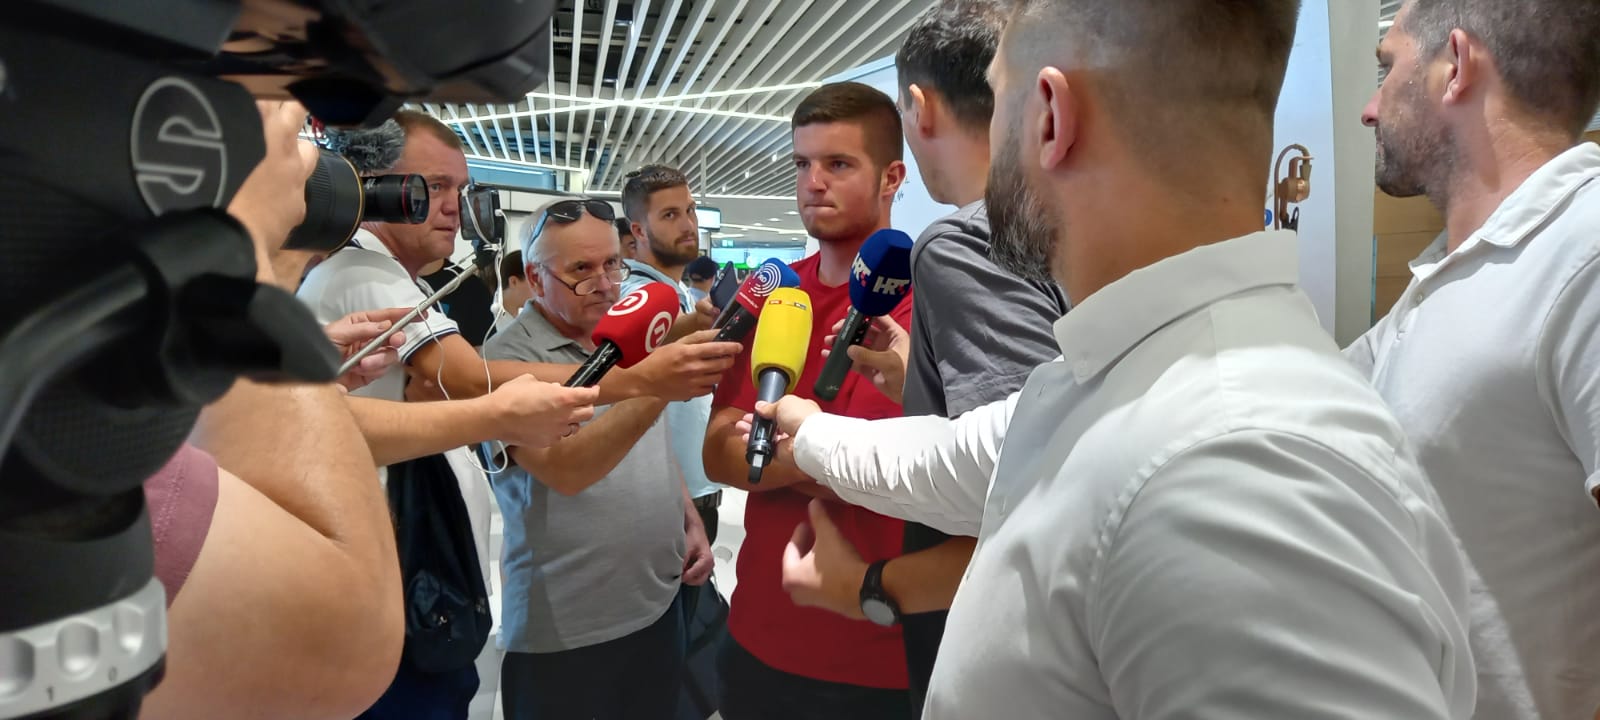 Mili Poljičak se vratio u Split nakon slavlja u Wimbledonu, veliki interes hrvatskih medija